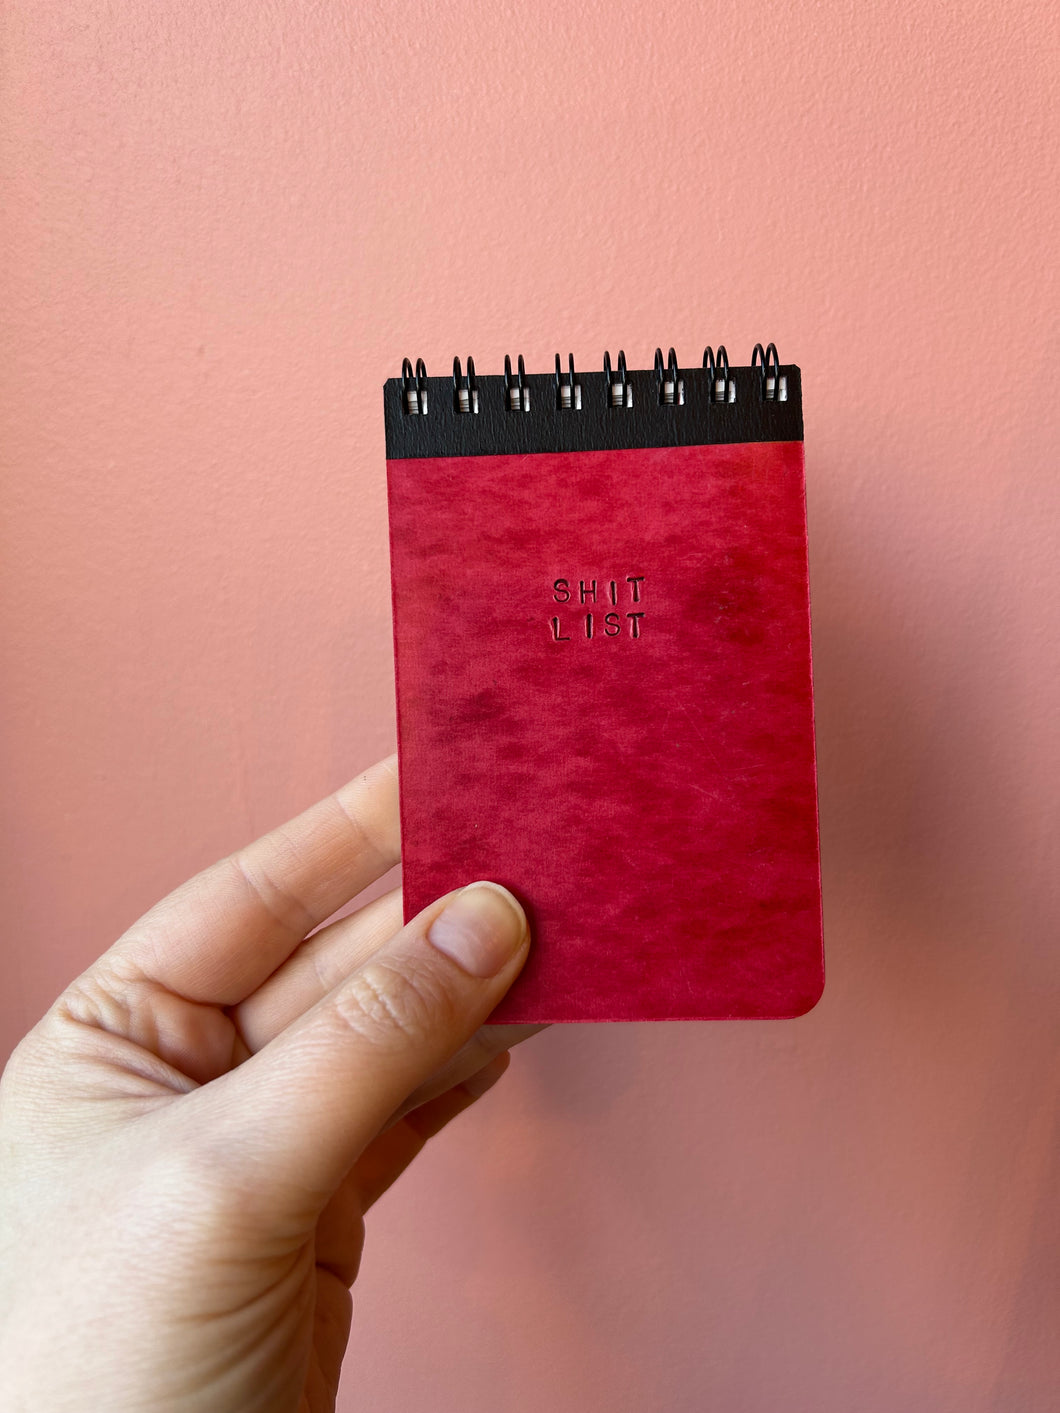 Little SH*T LIST - handmade rescued notebook